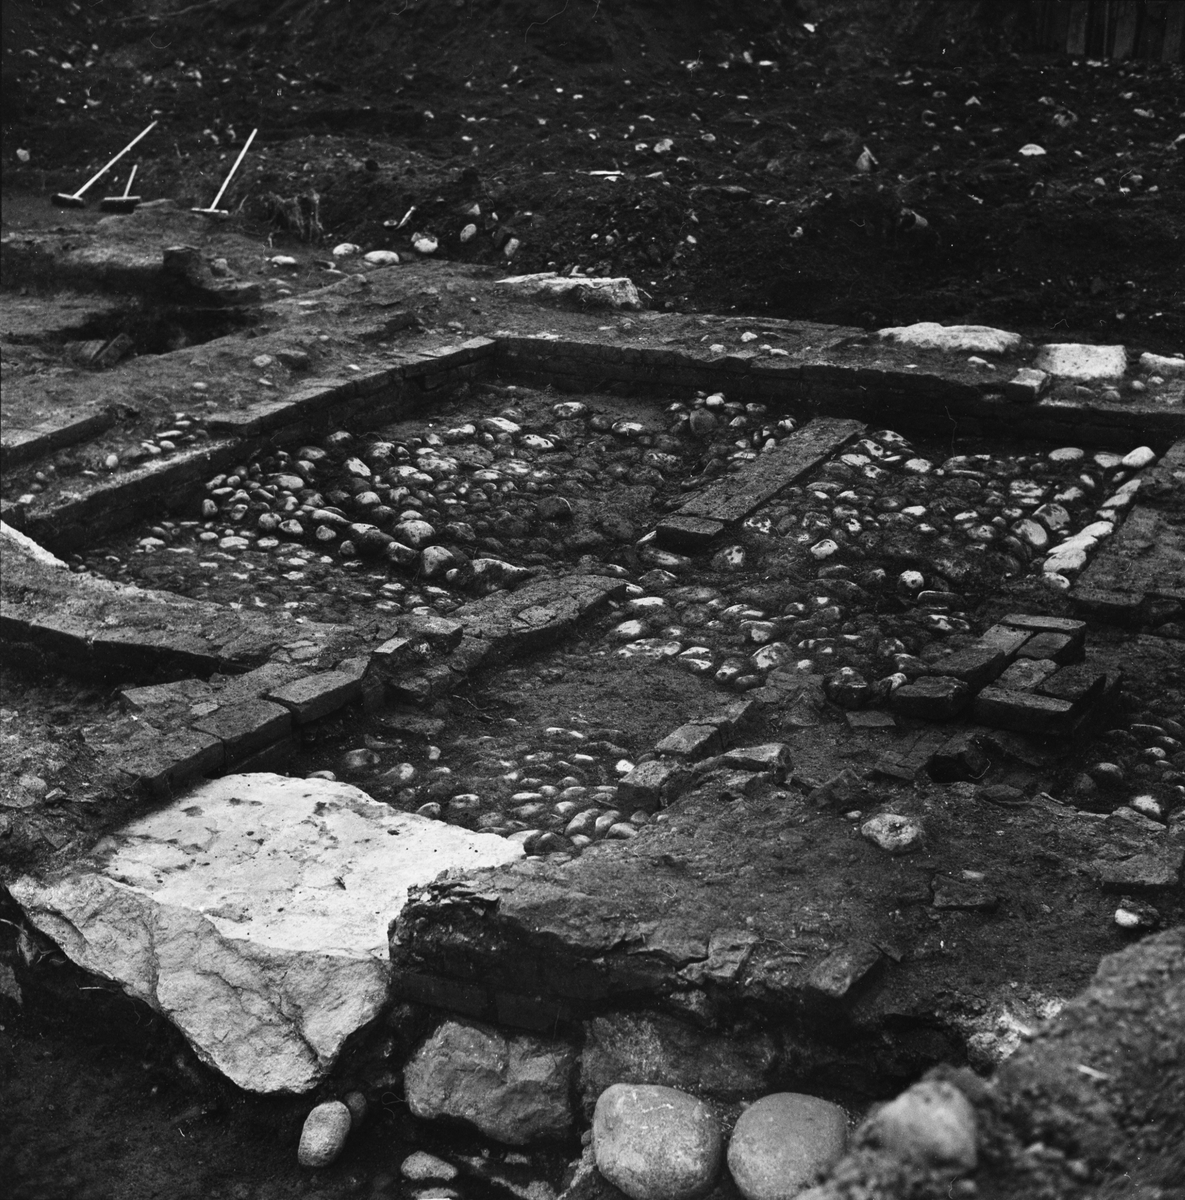 Arkeologiska utgrävningar - "700-årigt rådhus", Uppsala 1965